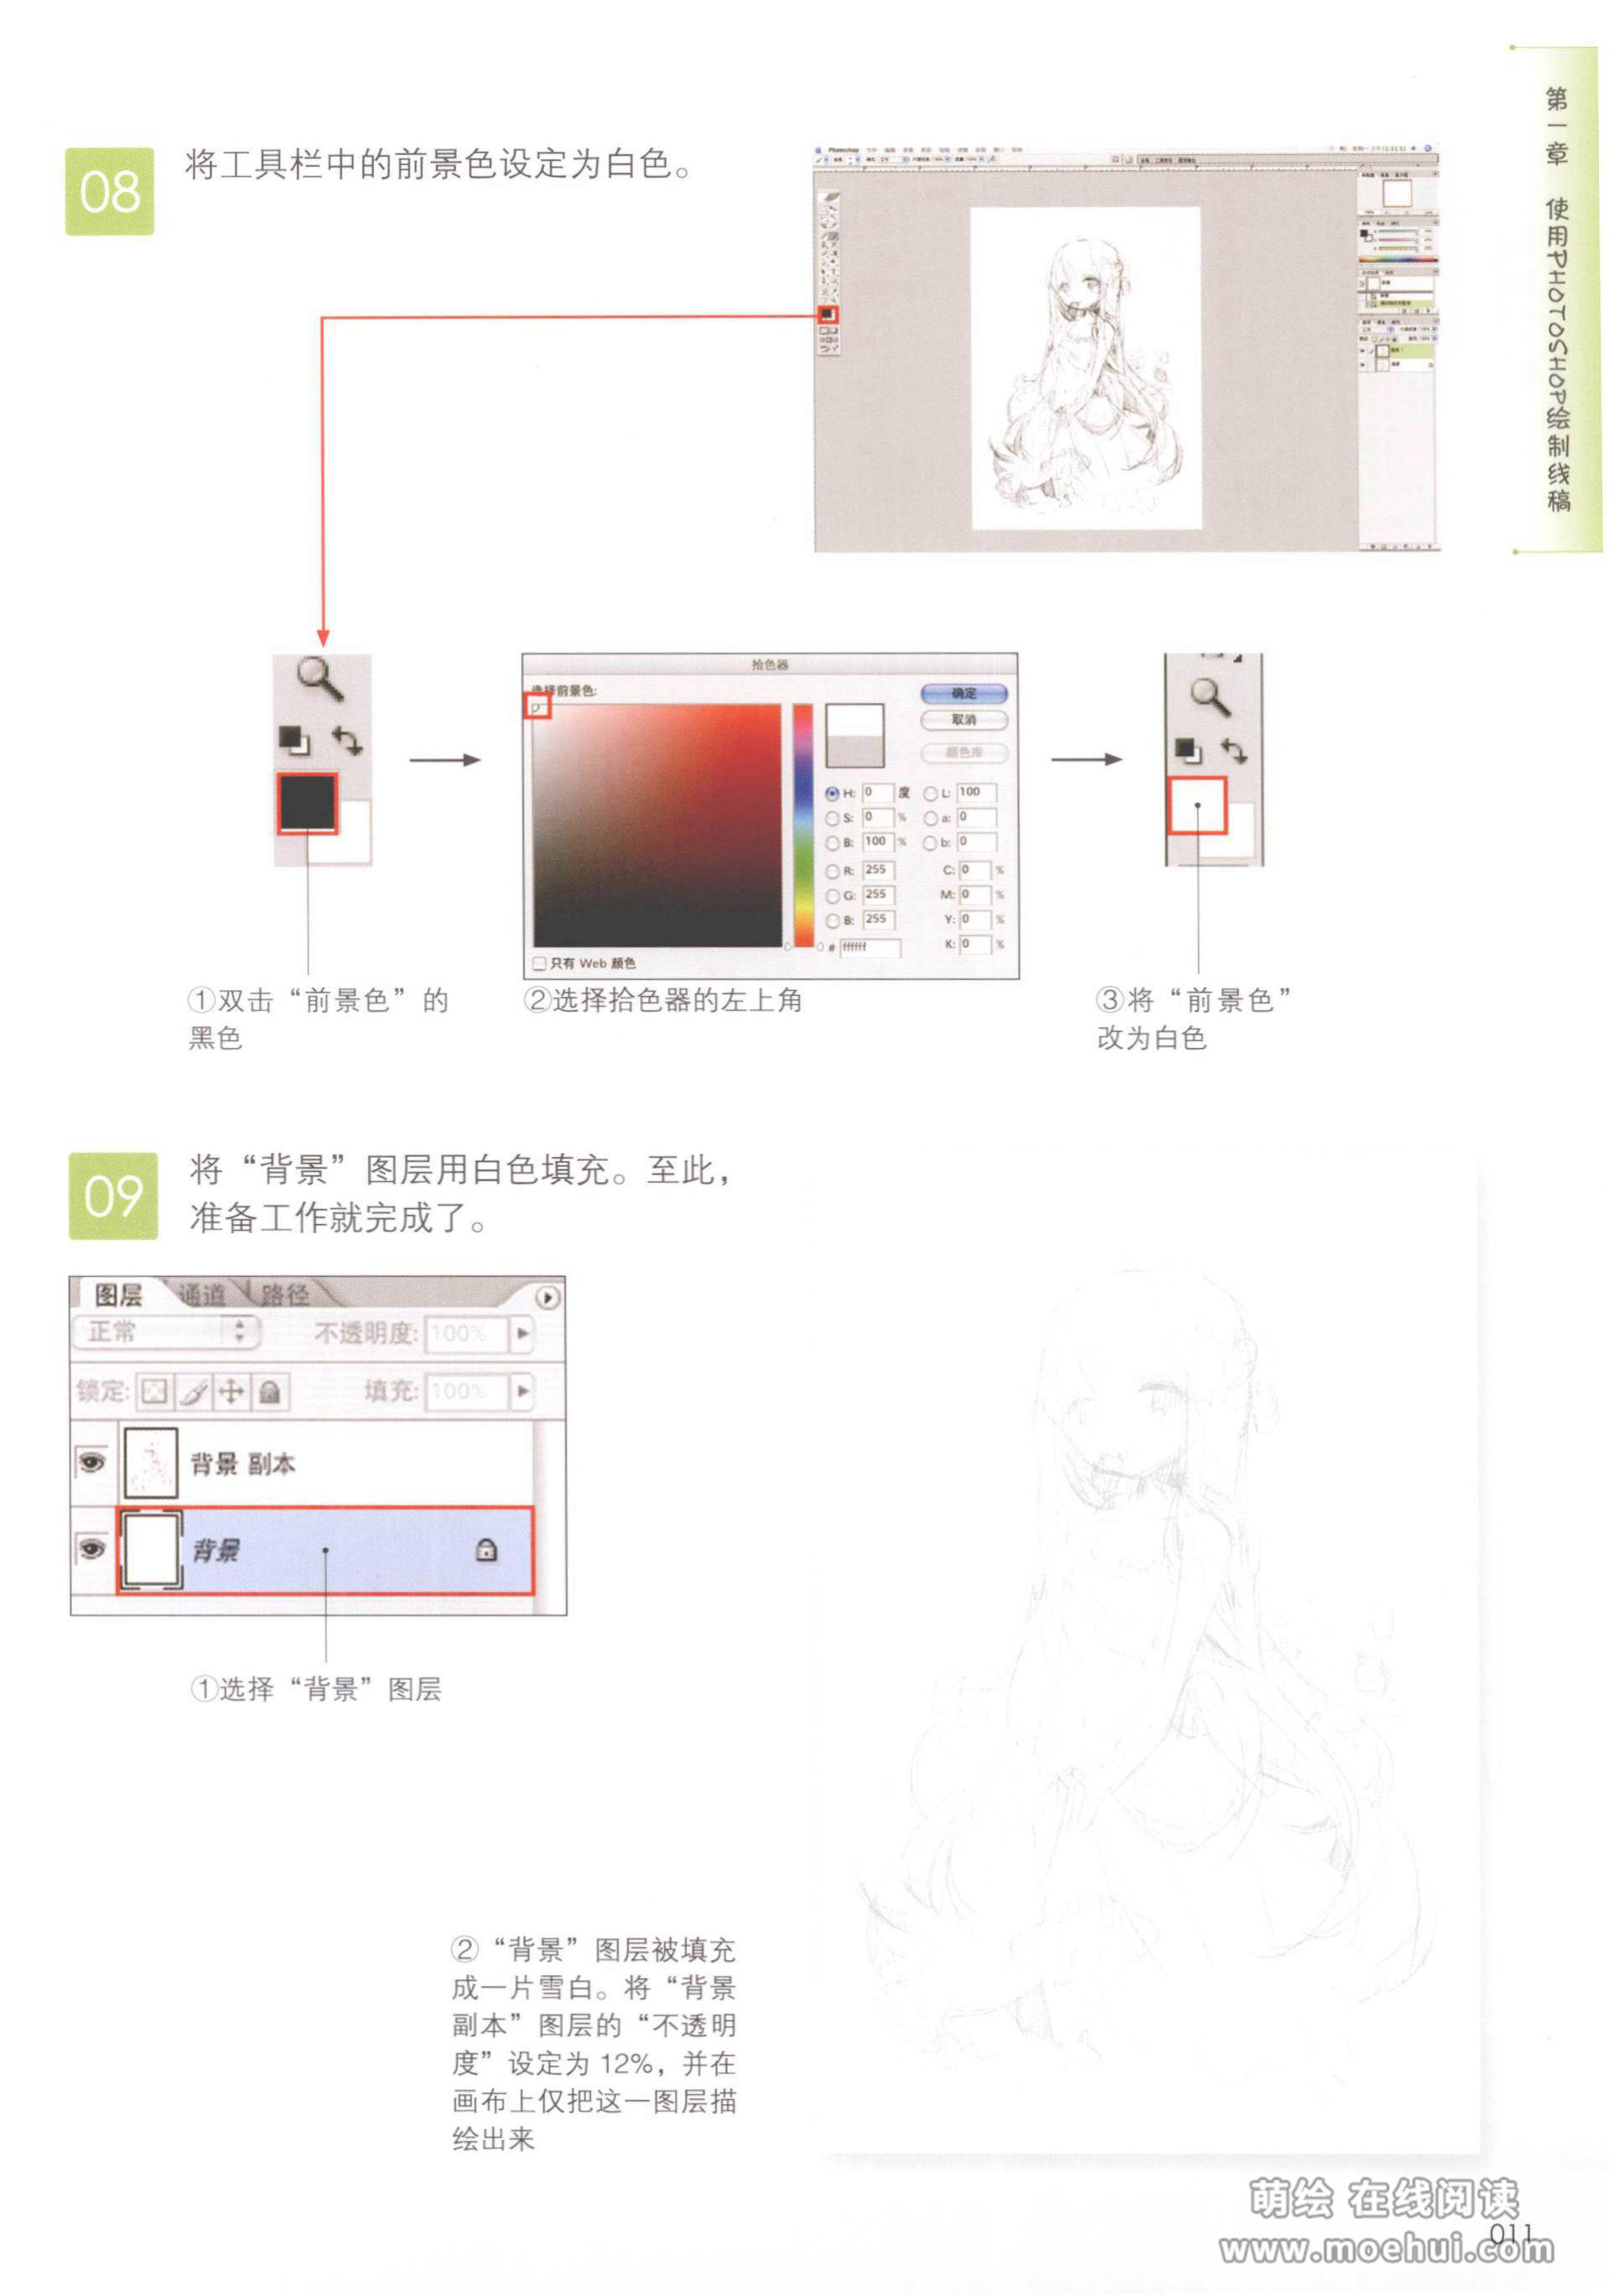 [在线试读]日本漫画名家CG课堂2-史米克的漫画CG技巧[210P]